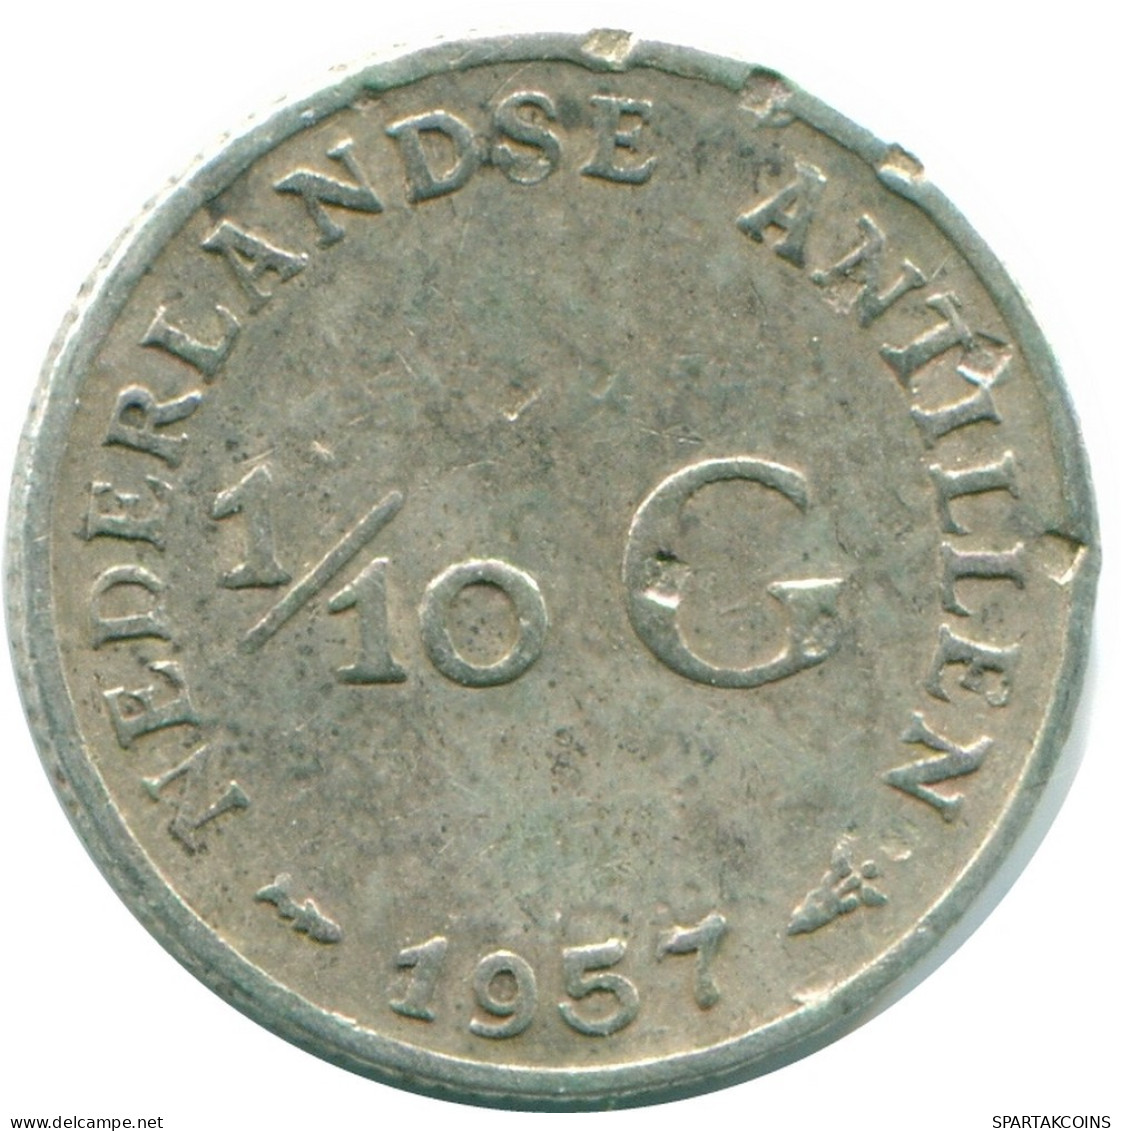 1/10 GULDEN 1957 NIEDERLÄNDISCHE ANTILLEN SILBER Koloniale Münze #NL12184.3.D.A - Nederlandse Antillen